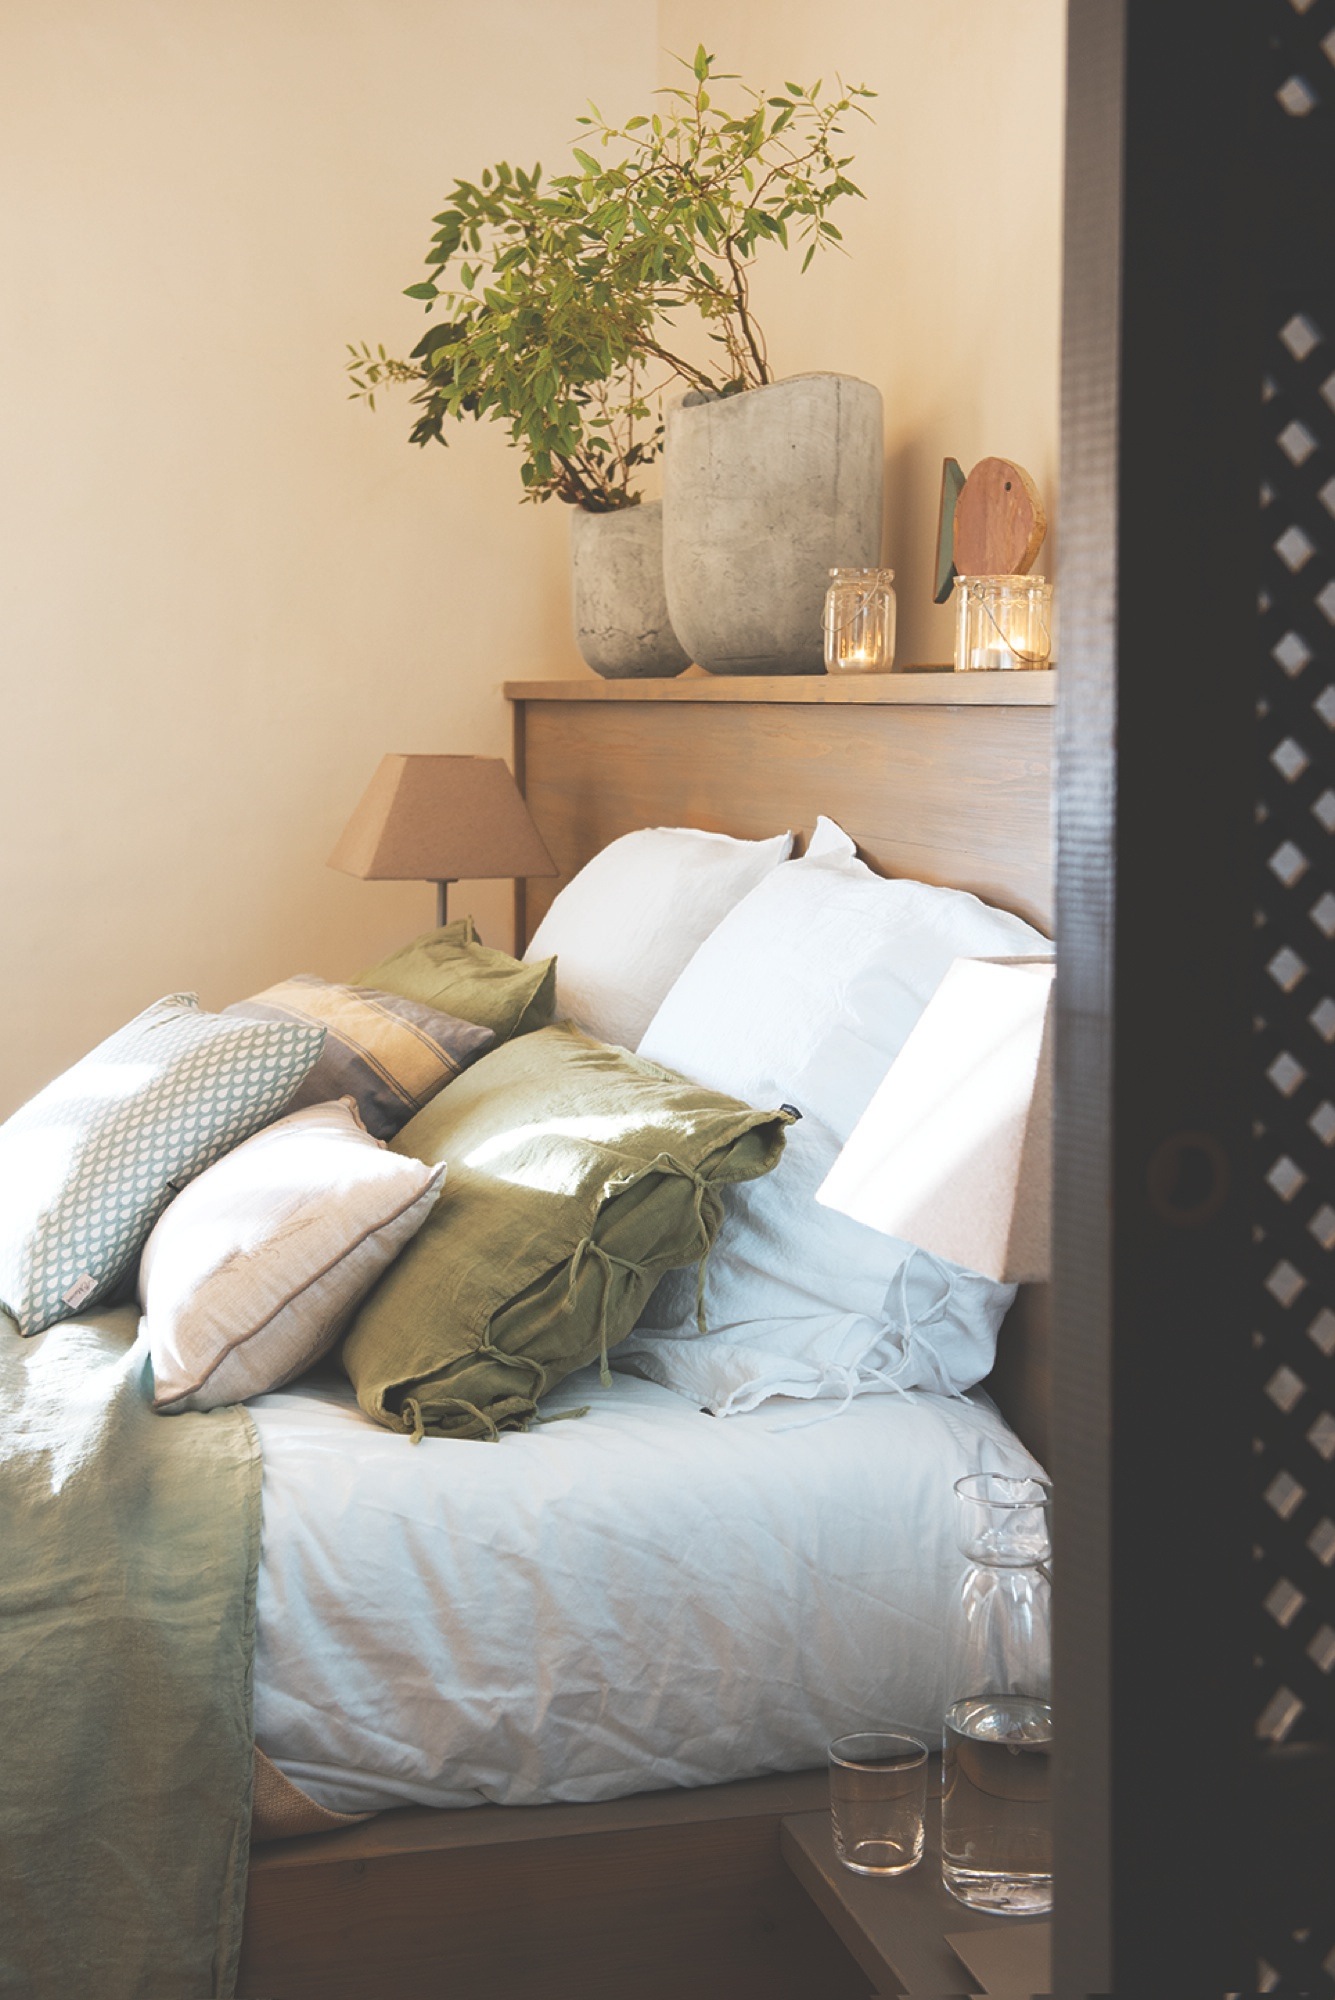 Detalle de dormitorio con cojines de tonos verdes, blancos y azules - 438529